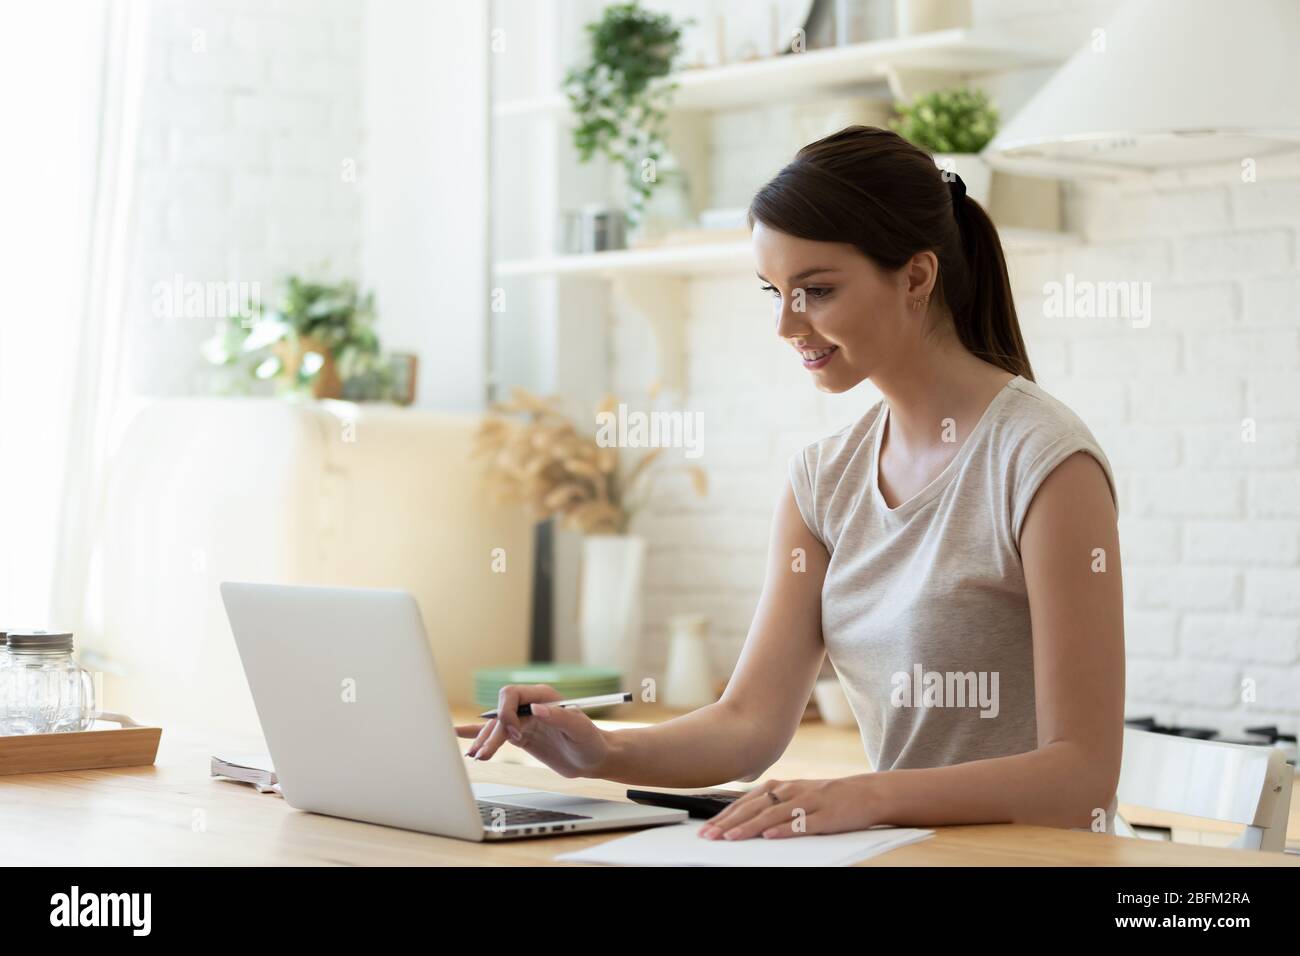 Glückliche junge attraktive Frau mit Rechner und Laptop für die Berechnung. Stockfoto